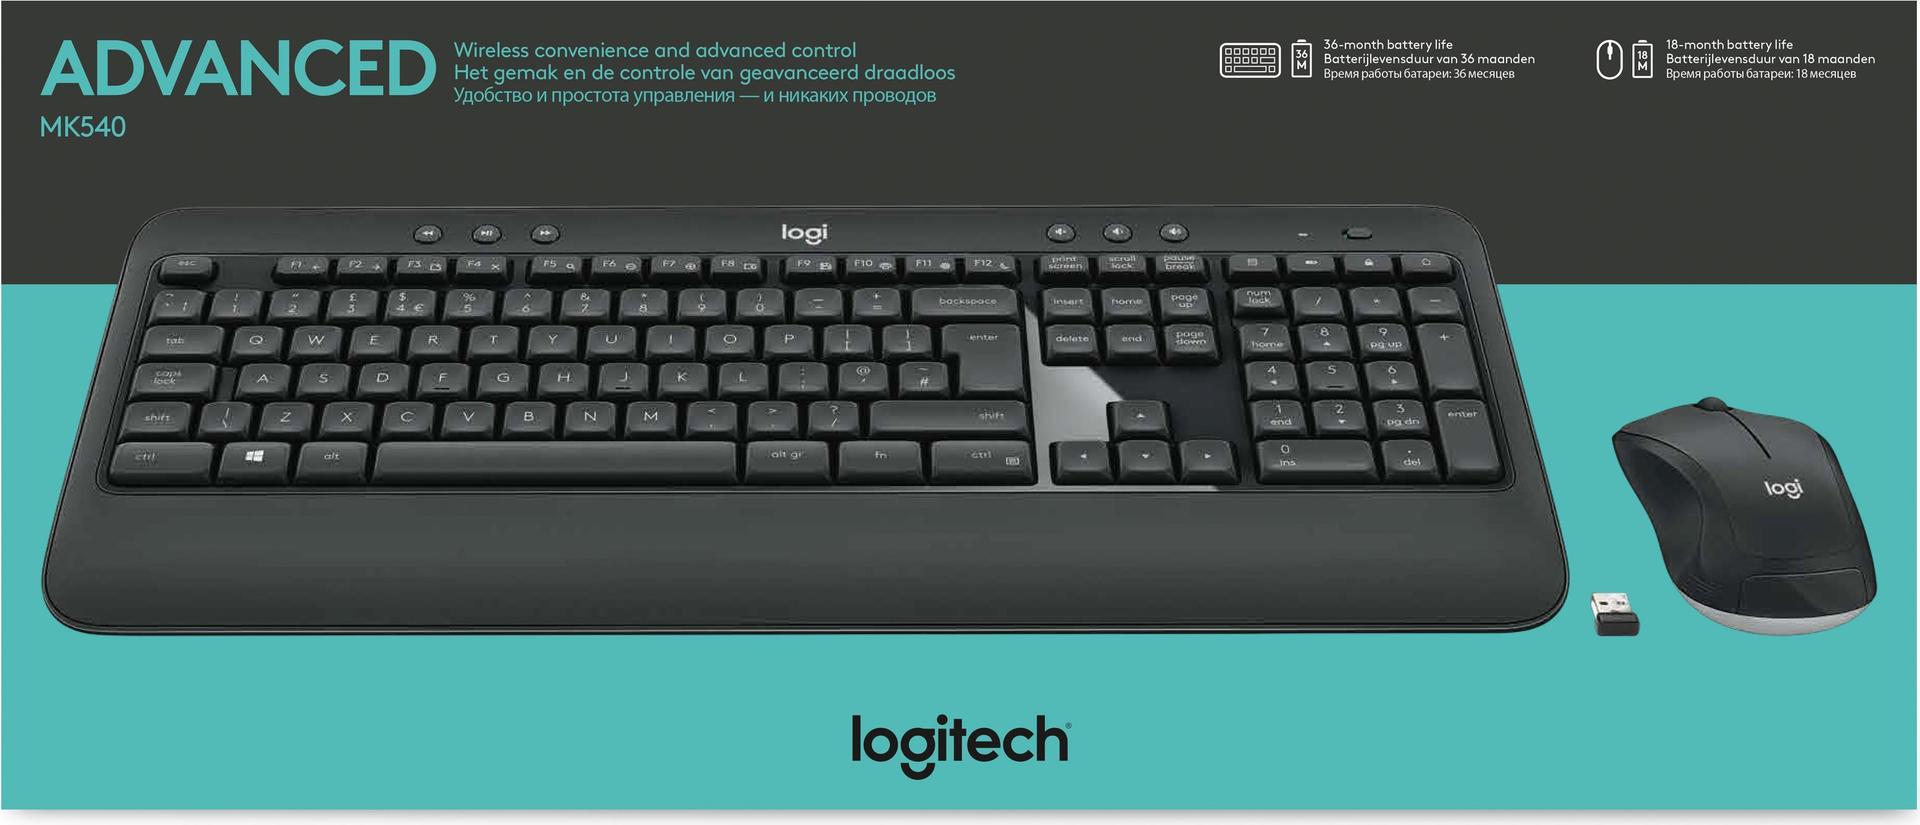 Logitech MK540 Advanced (920-008692)